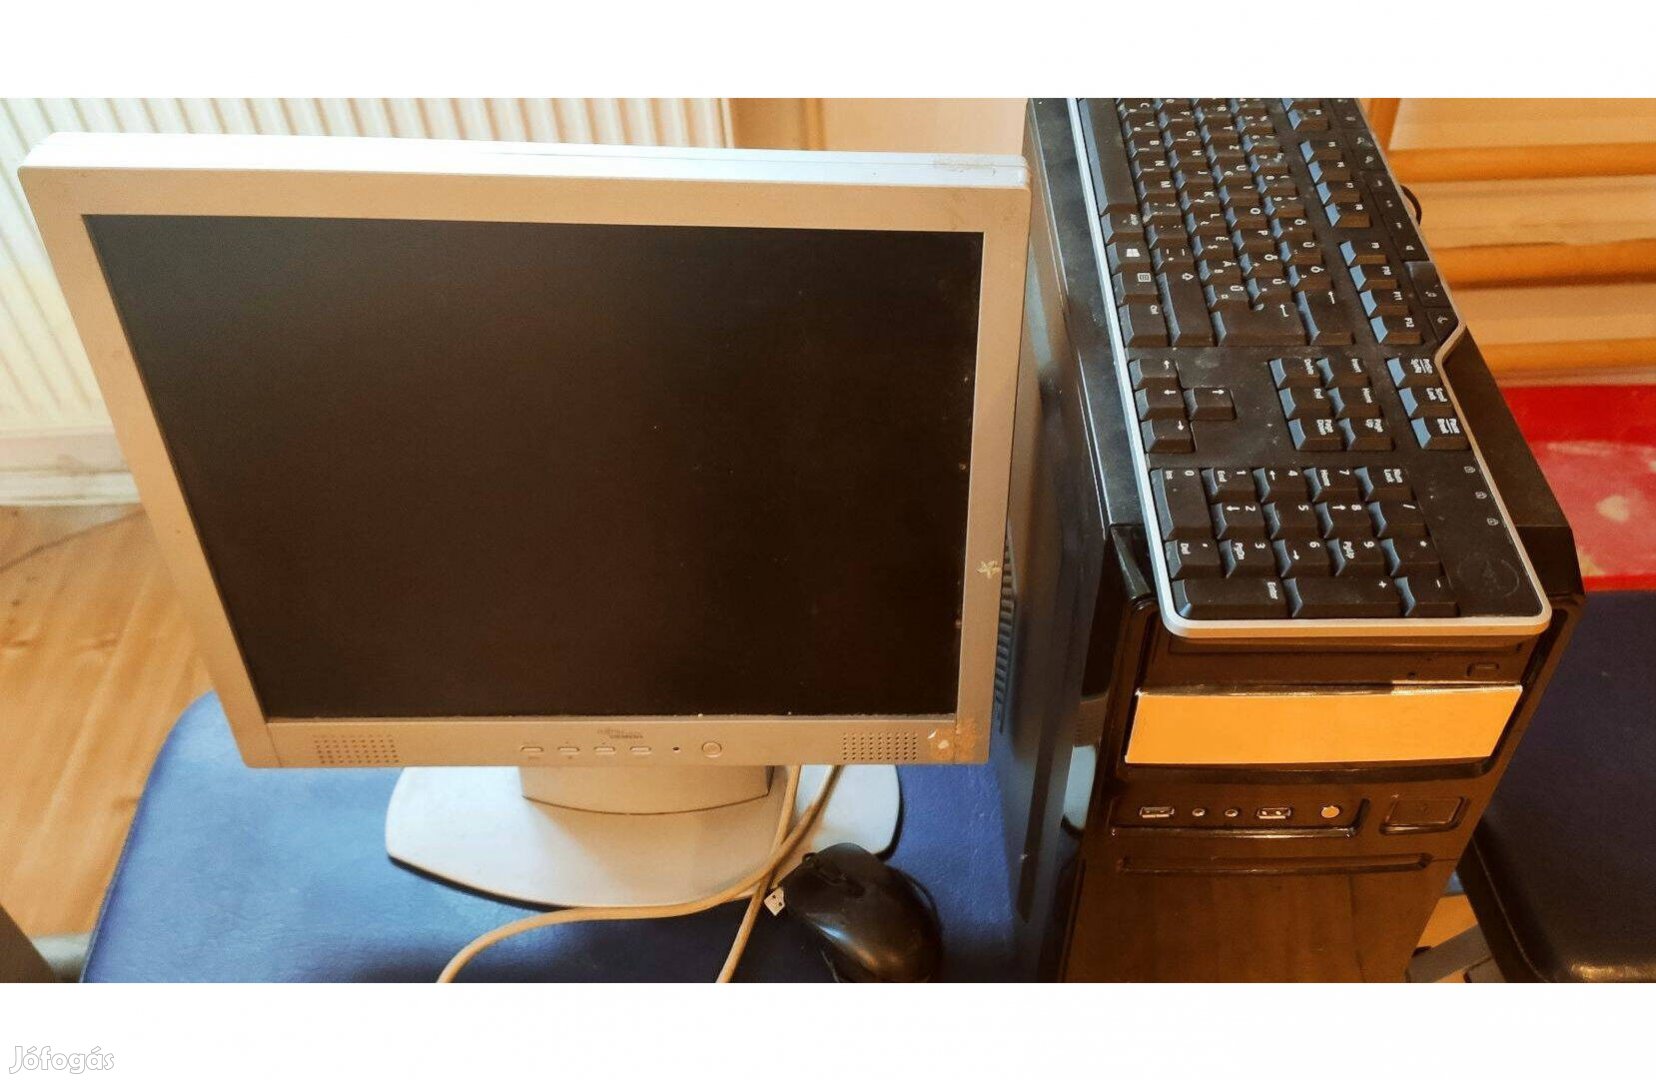 Komplett irodai számítógépes felszerelés jelképes áron